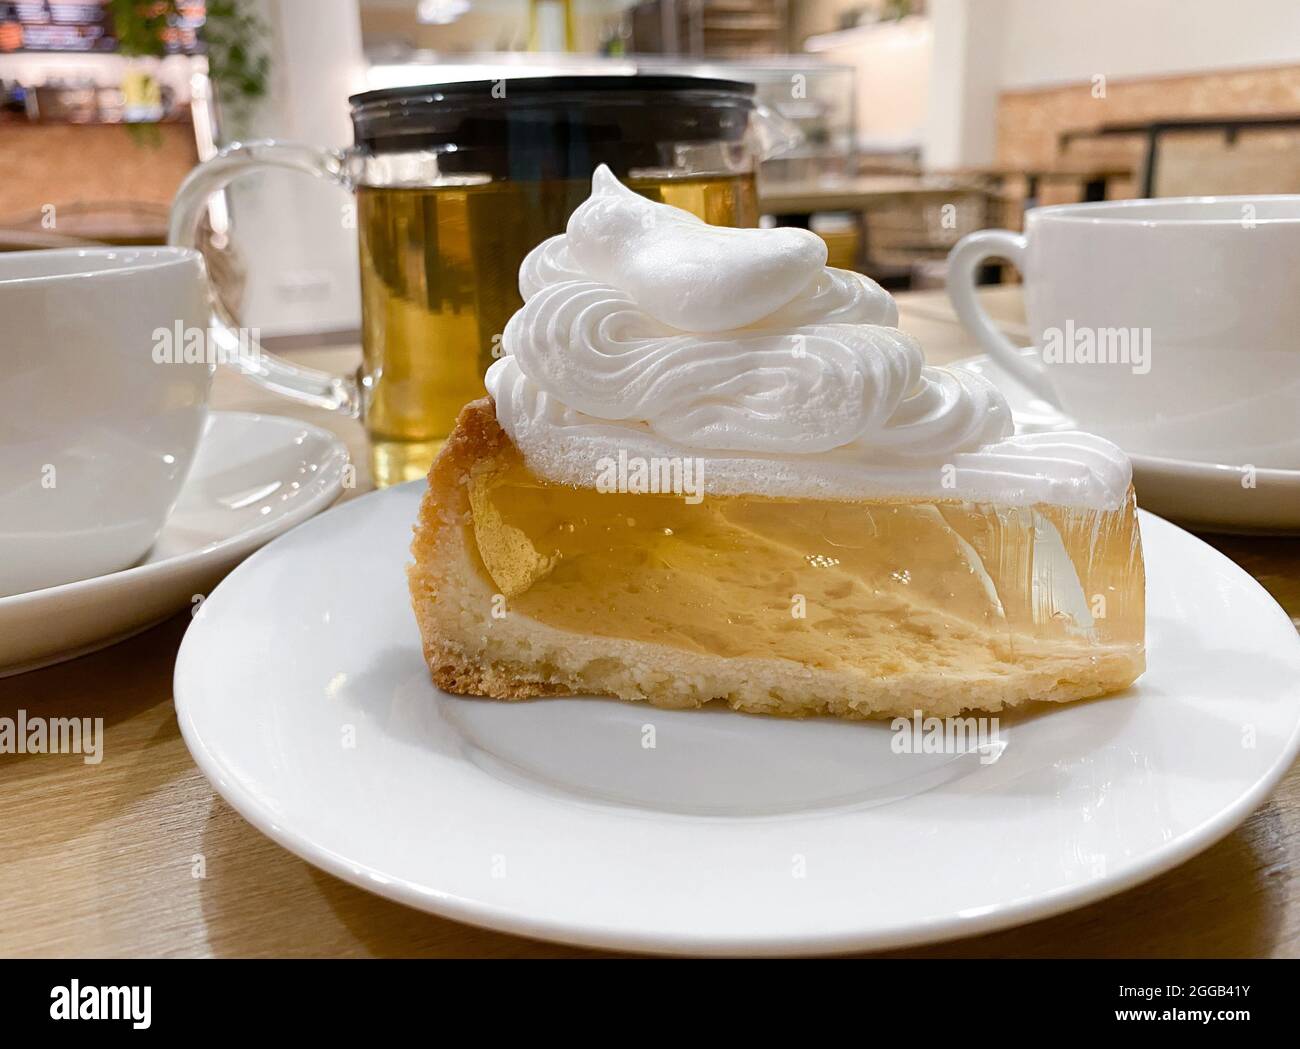 Nahaufnahme des Stückes transparenter Gelatinekuchen-Shortbread-Teig mit Baiser-Creme auf dem Tisch im Café. Stockfoto